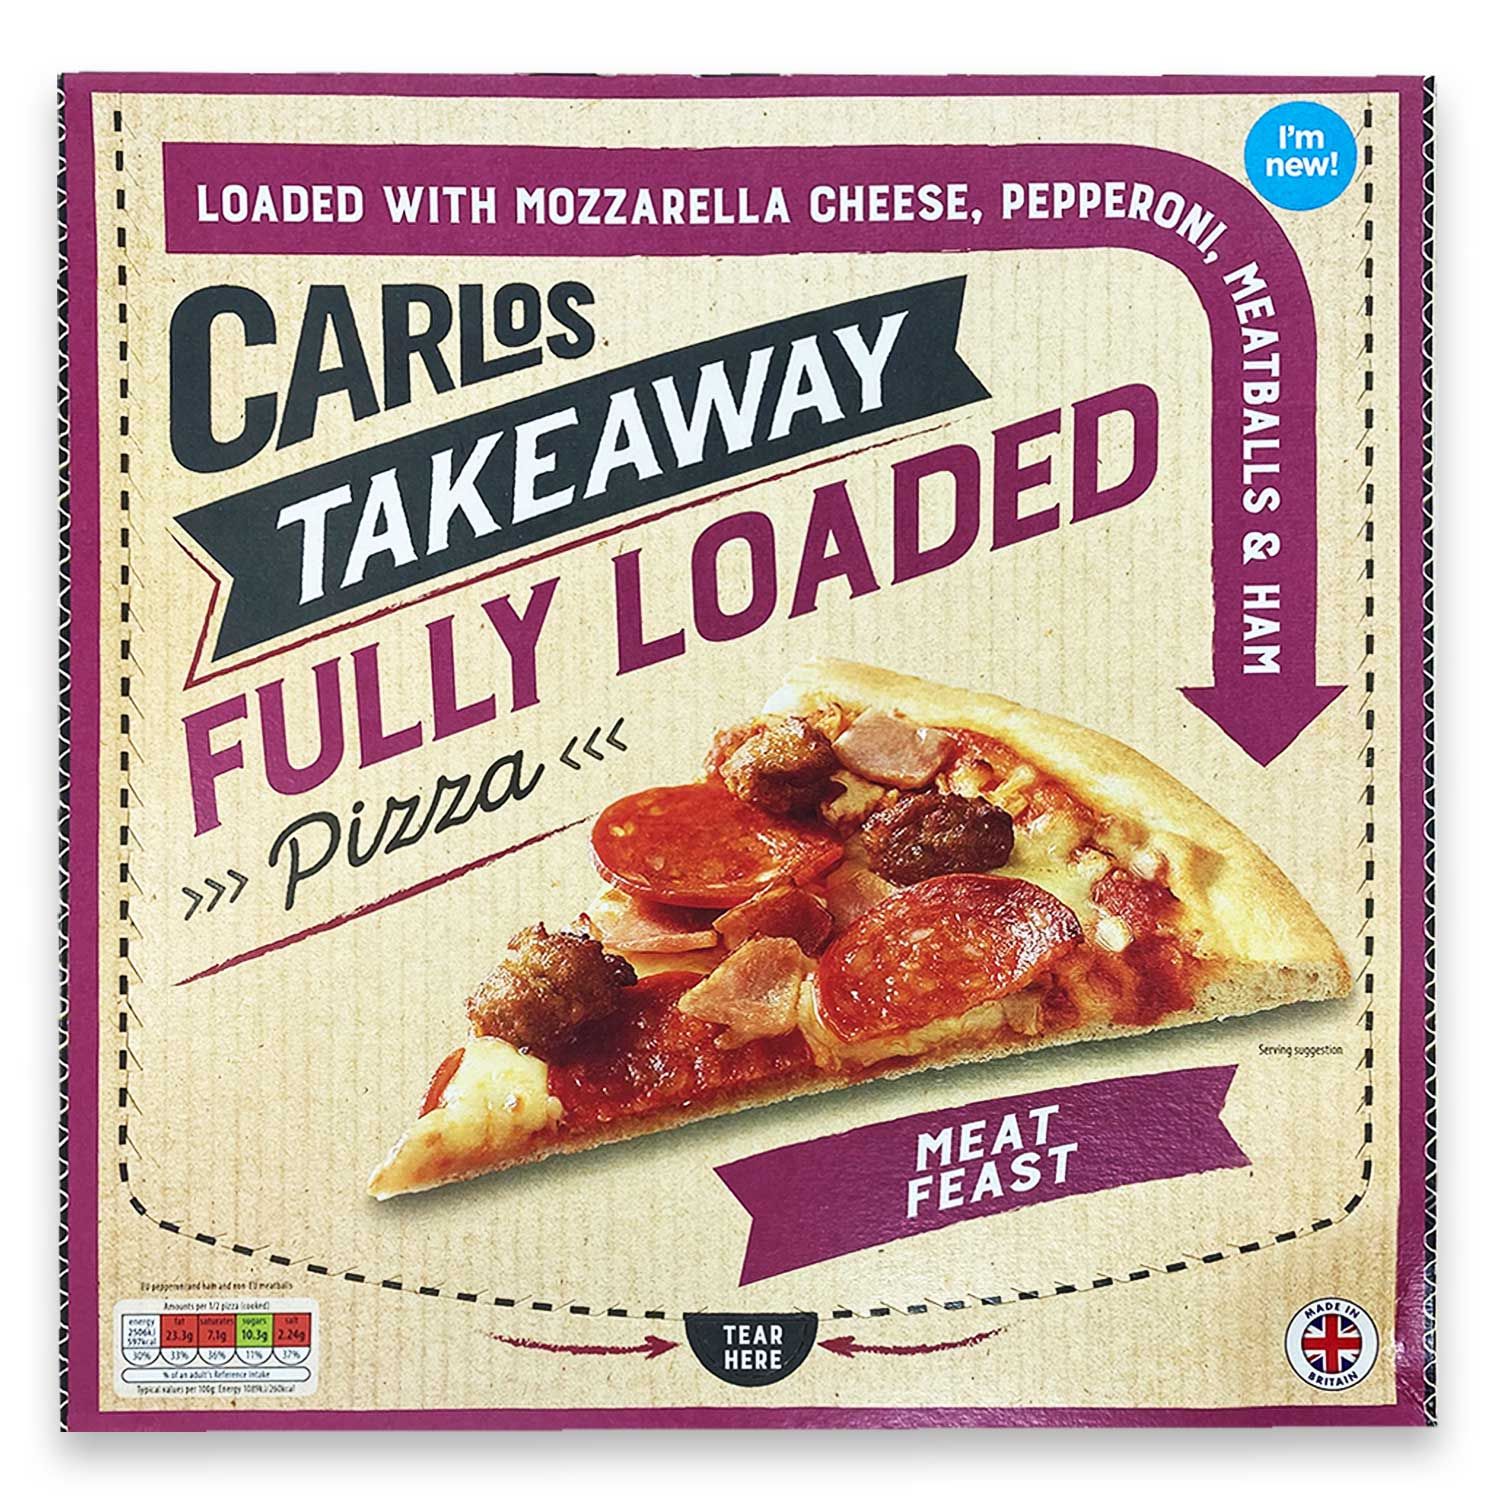 Carlos Takeaway Fully Loaded Meat Feast Pizza 510g ALDI